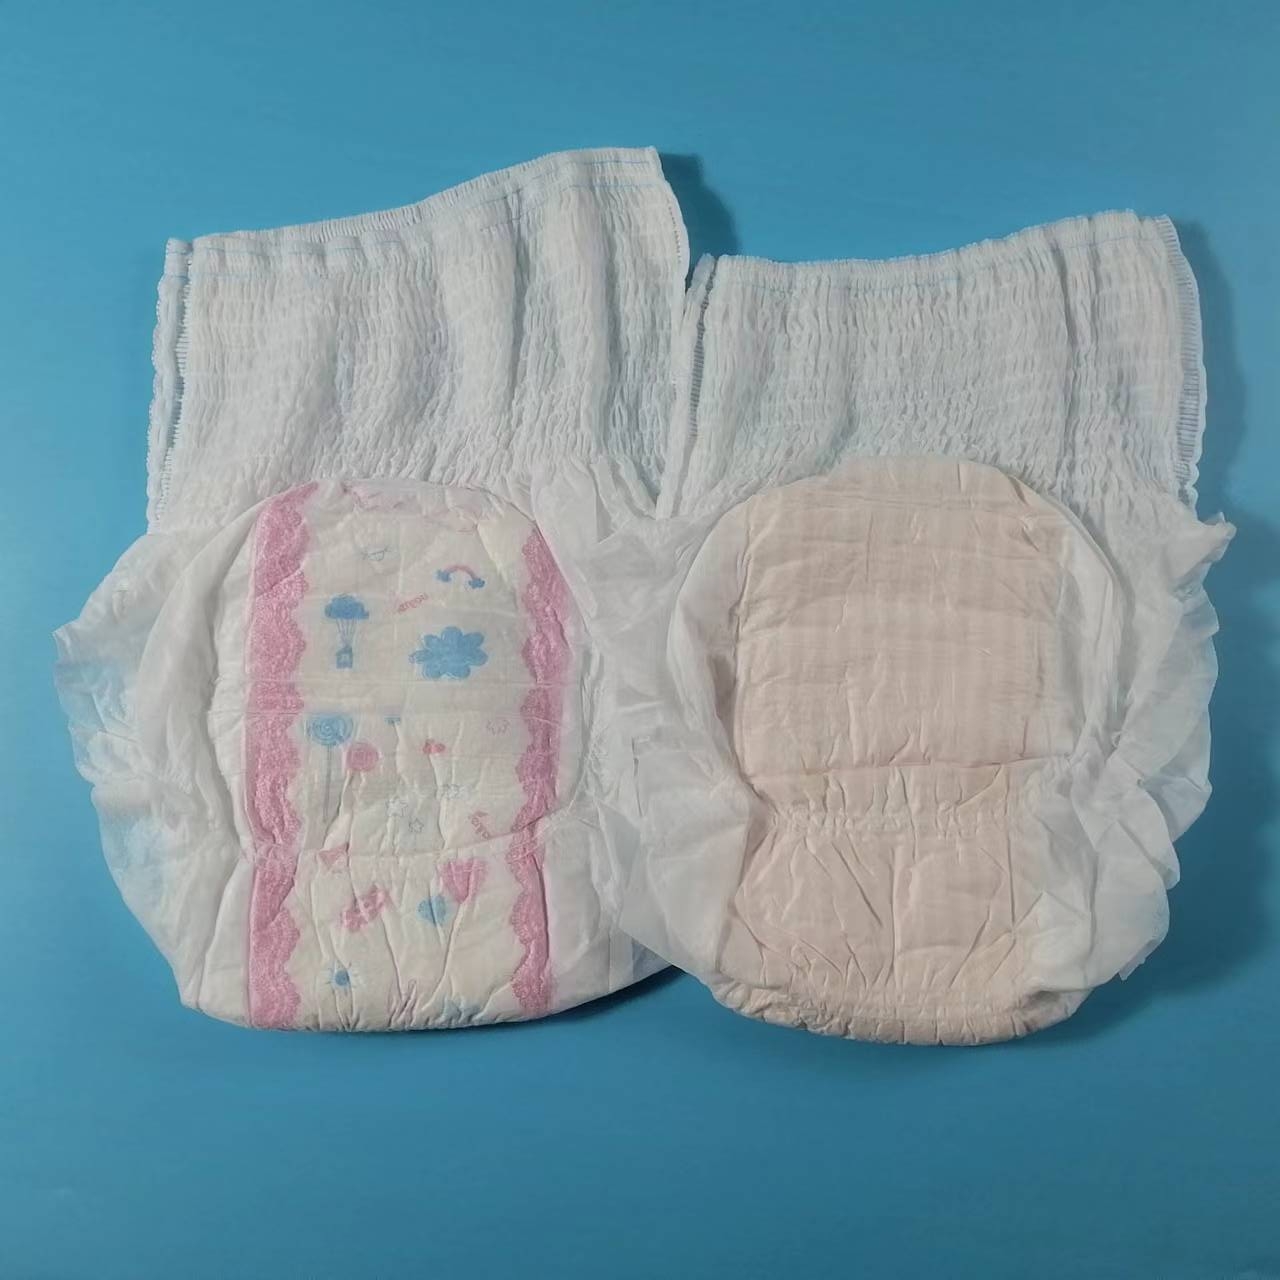 Baixo preço saudável tecido respirável algodão descartável de alta qualidade guardanapo sanitário calcinha para mulher nova mãe